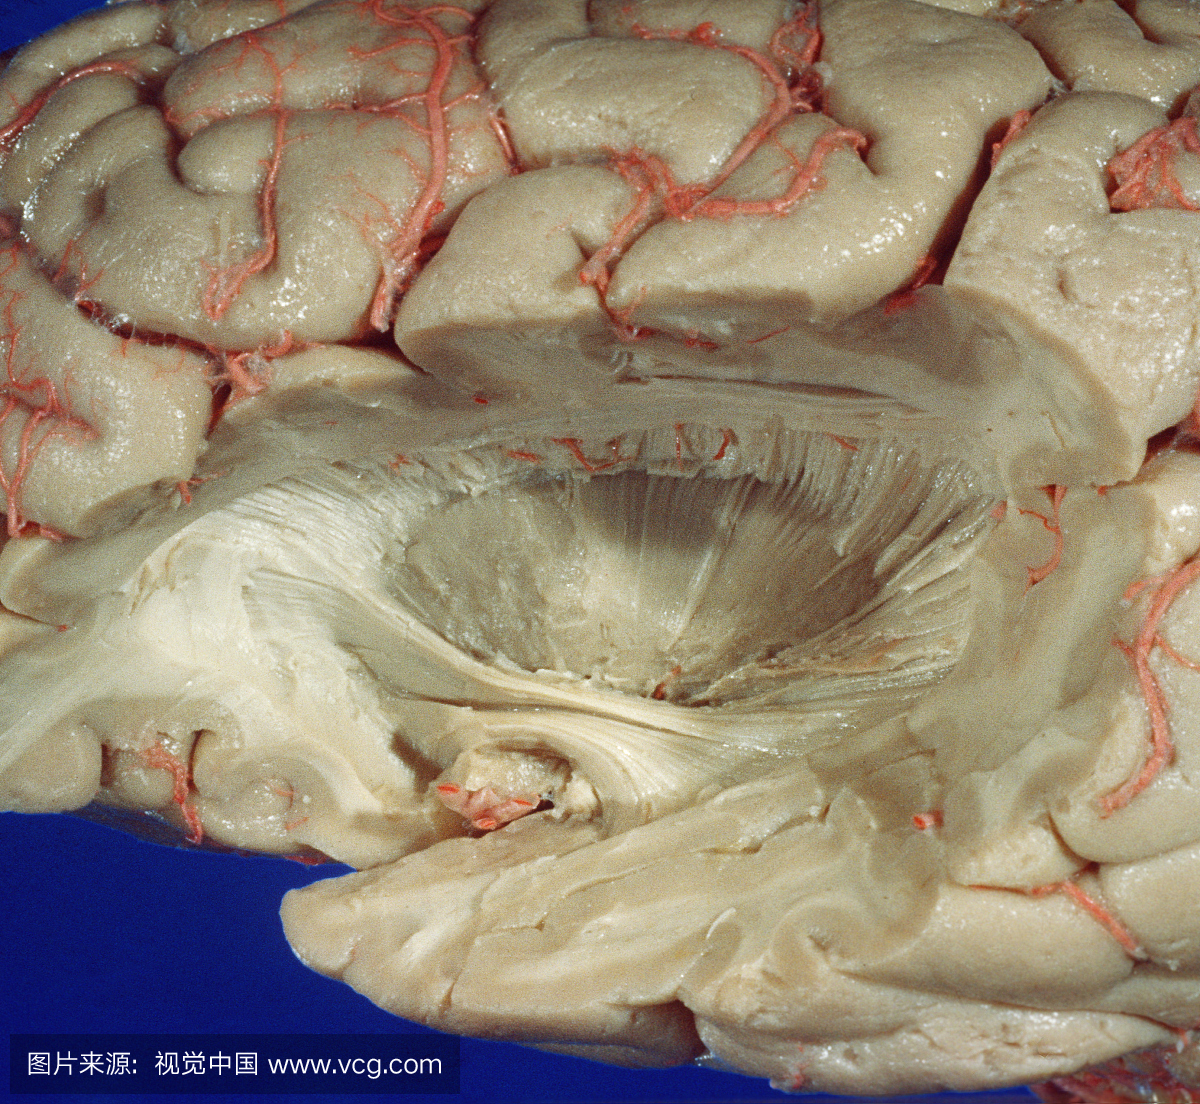 脑 - 左外侧,解剖松果体核。